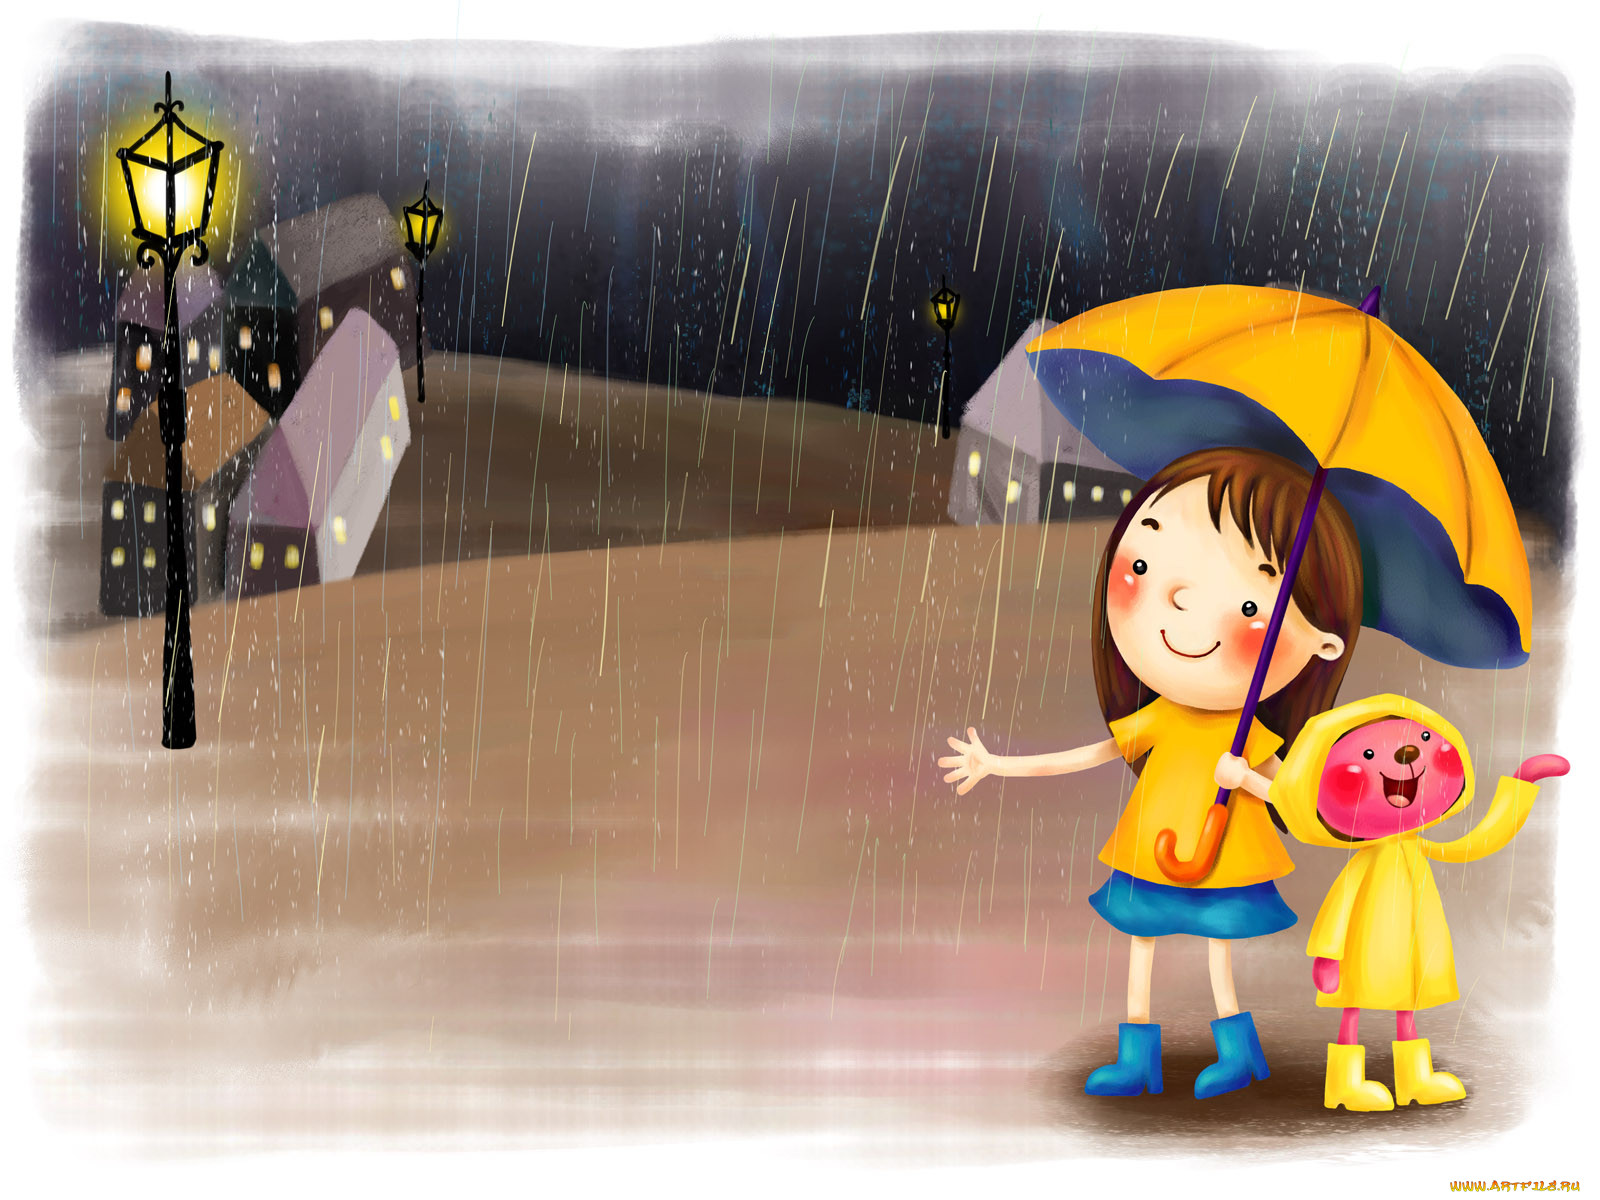 Выйду на улицу мне весело. День прогвлов под Дождкм. Дети дождя. Дождливый день. Дождь рисунок.